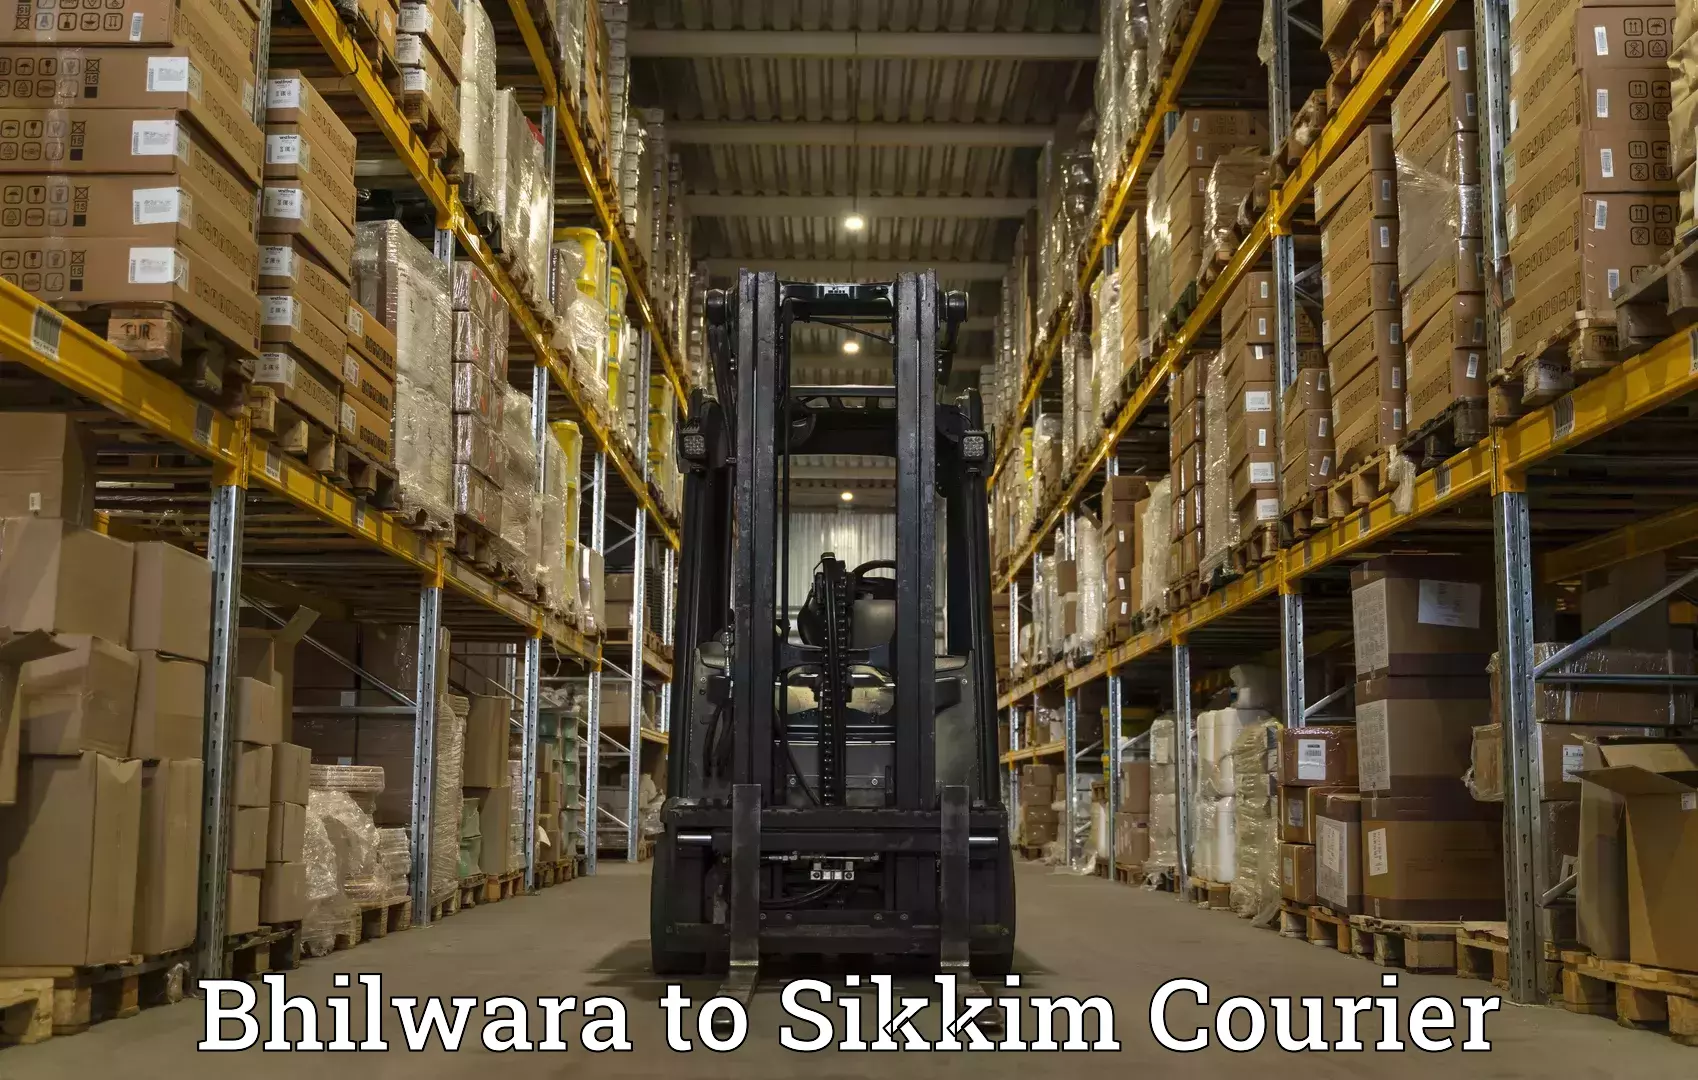 Efficient parcel service Bhilwara to Geyzing